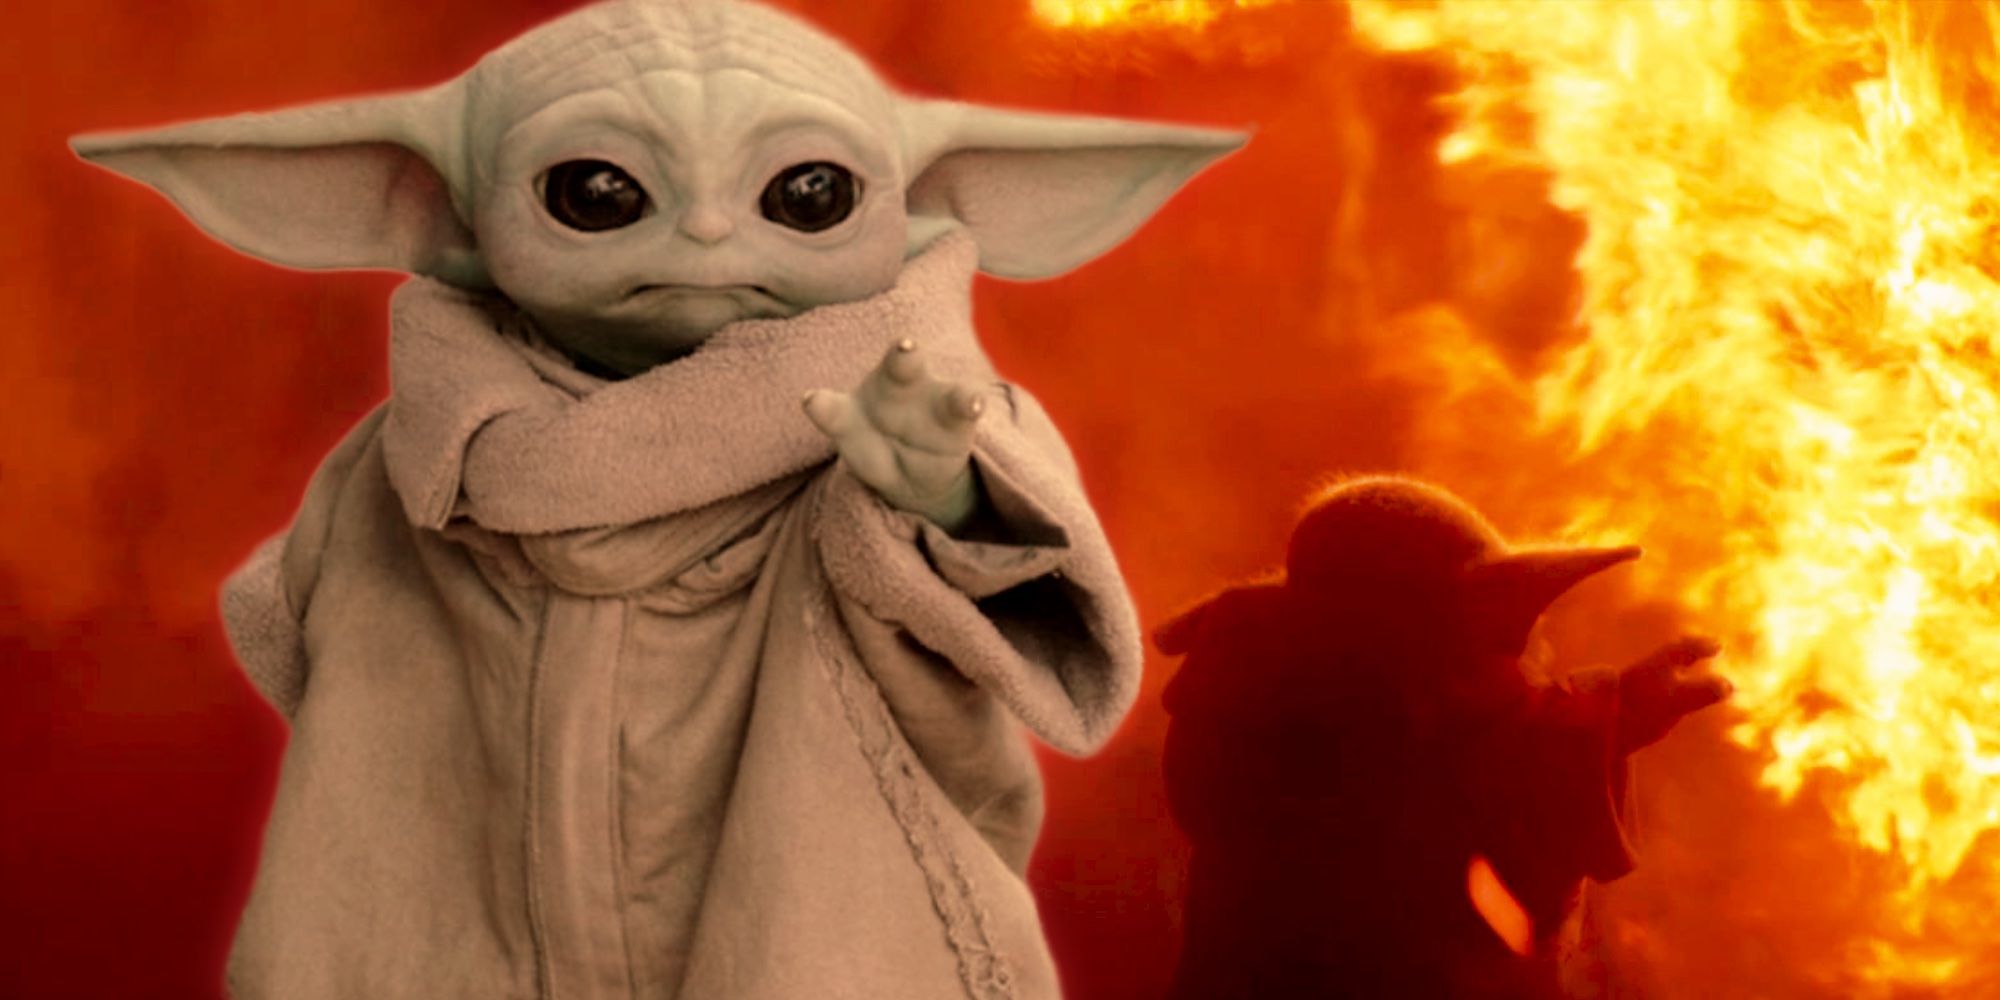 Baby Yoda's Force, Healing Powers Raise 'Mandalorian' Questions